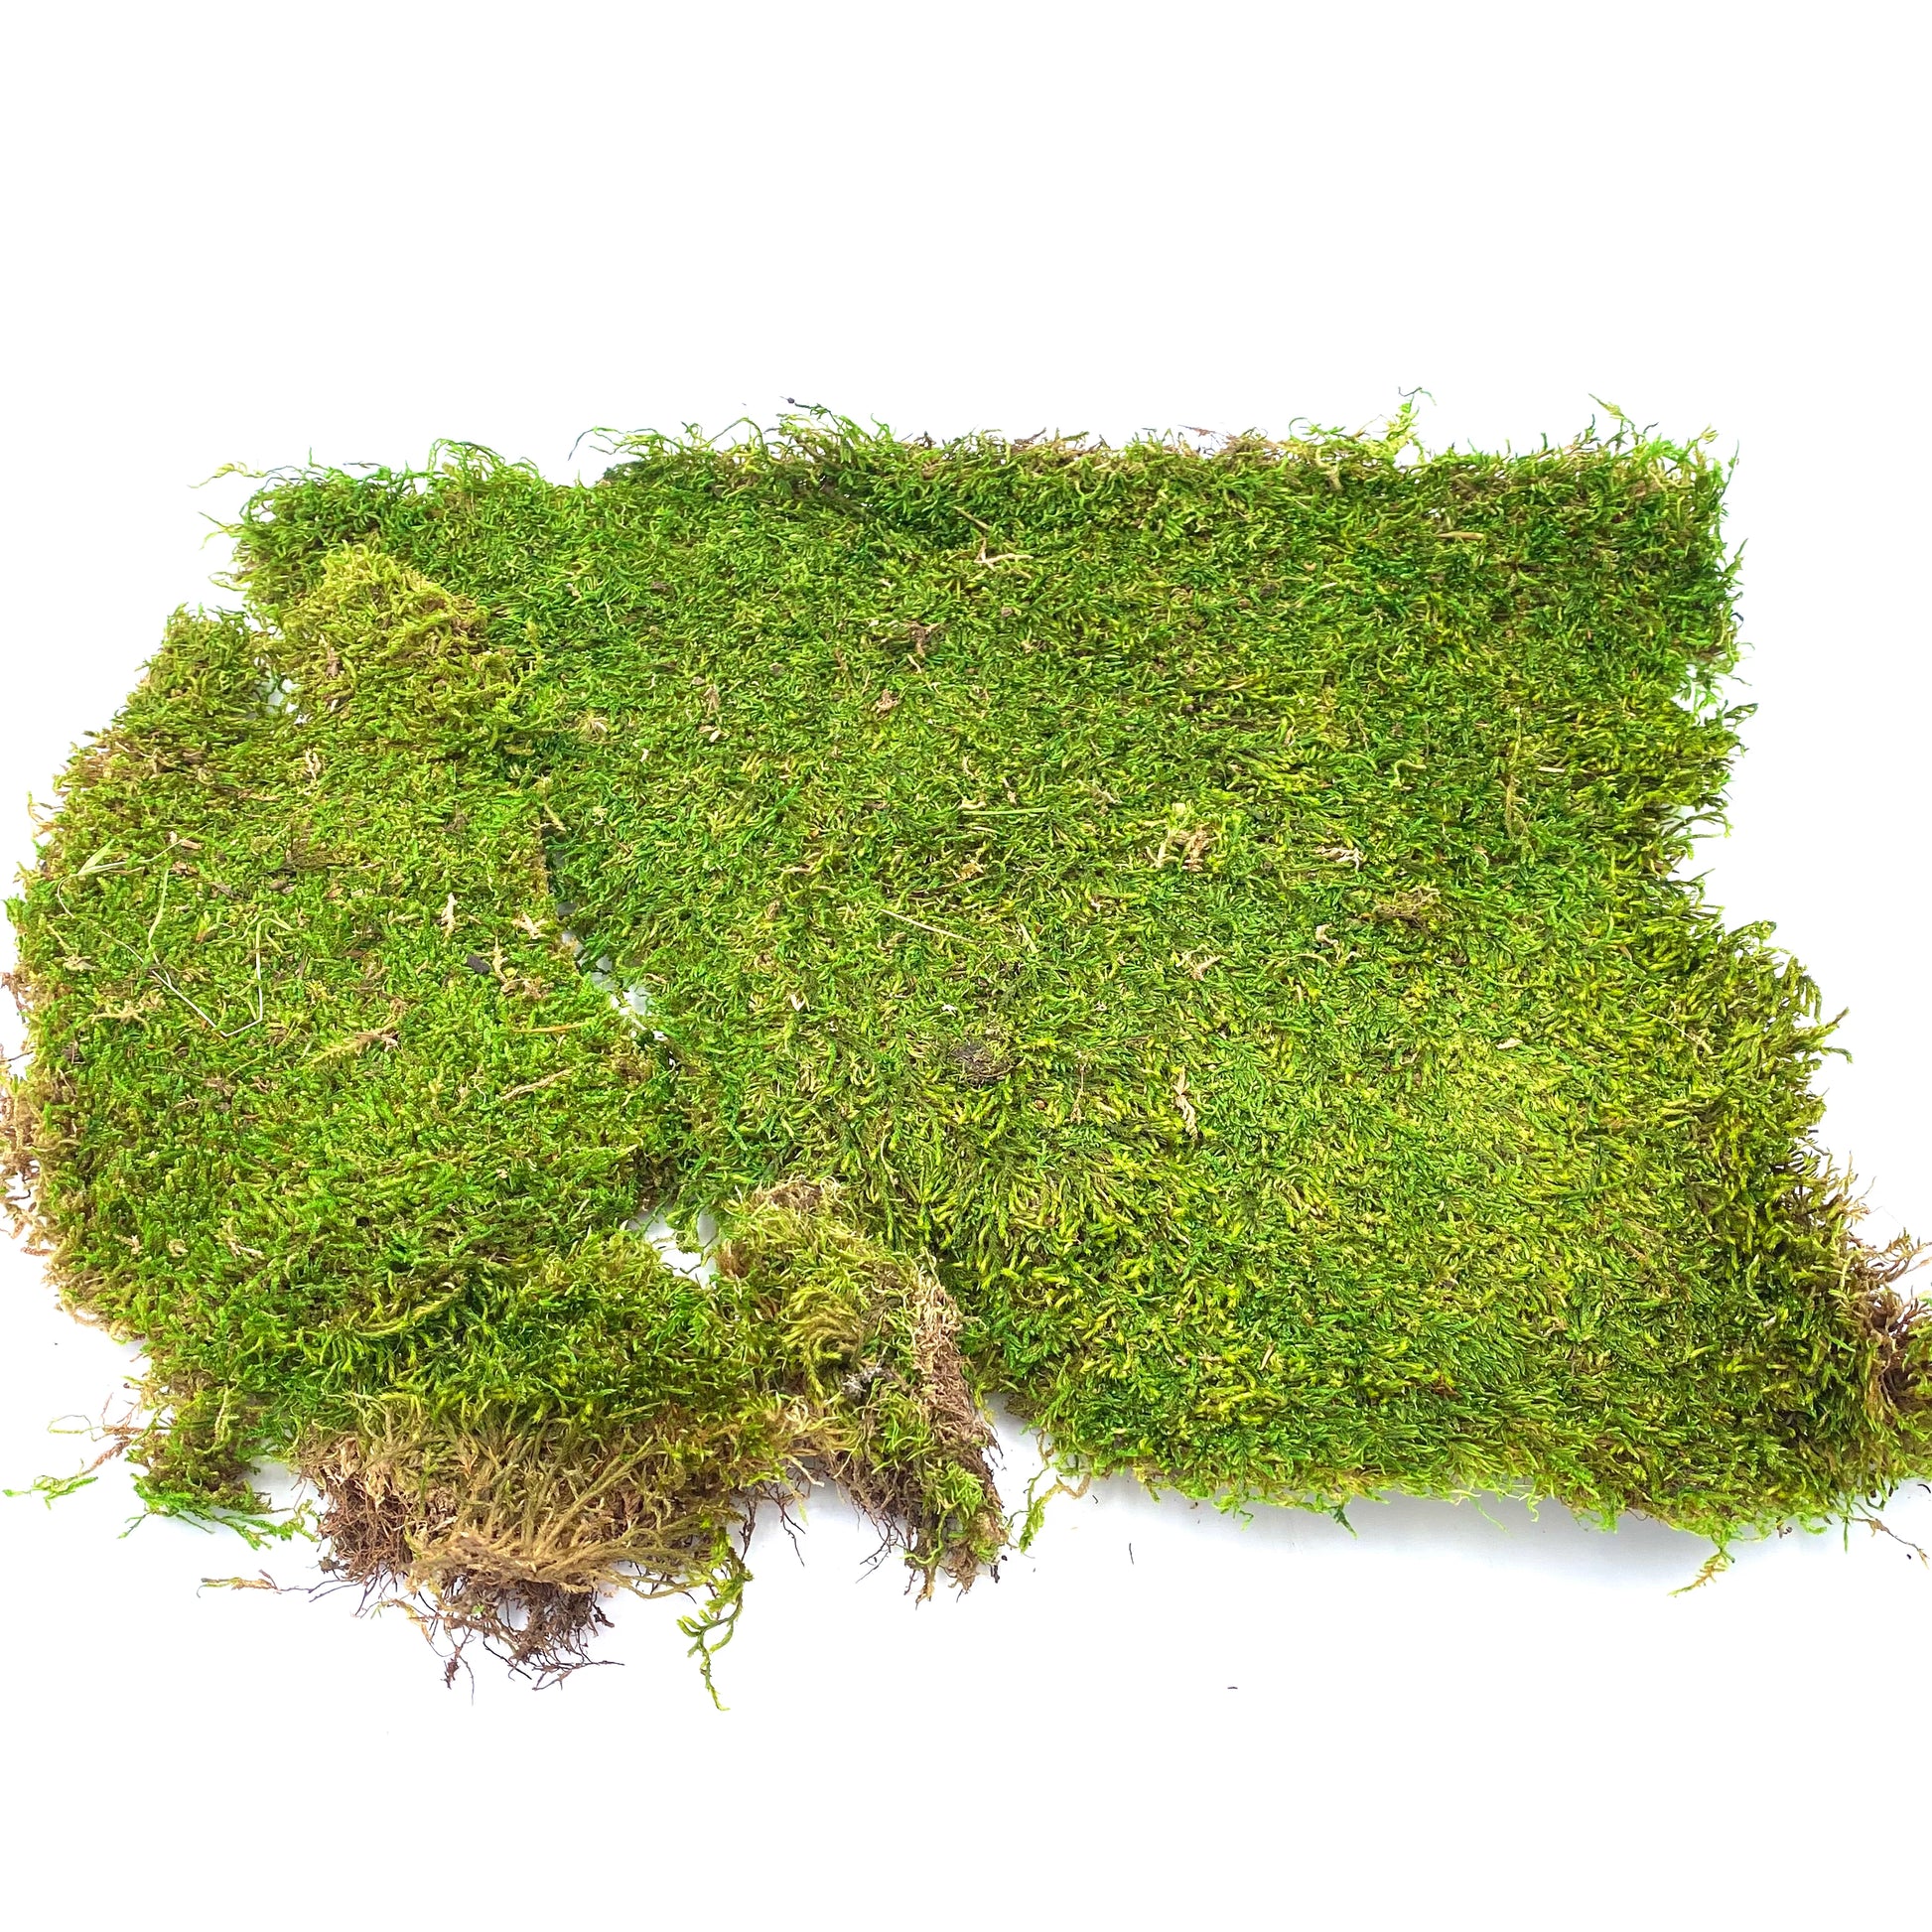 Natural Sheet Moss, Australian Fairy Garden Product, Fairy